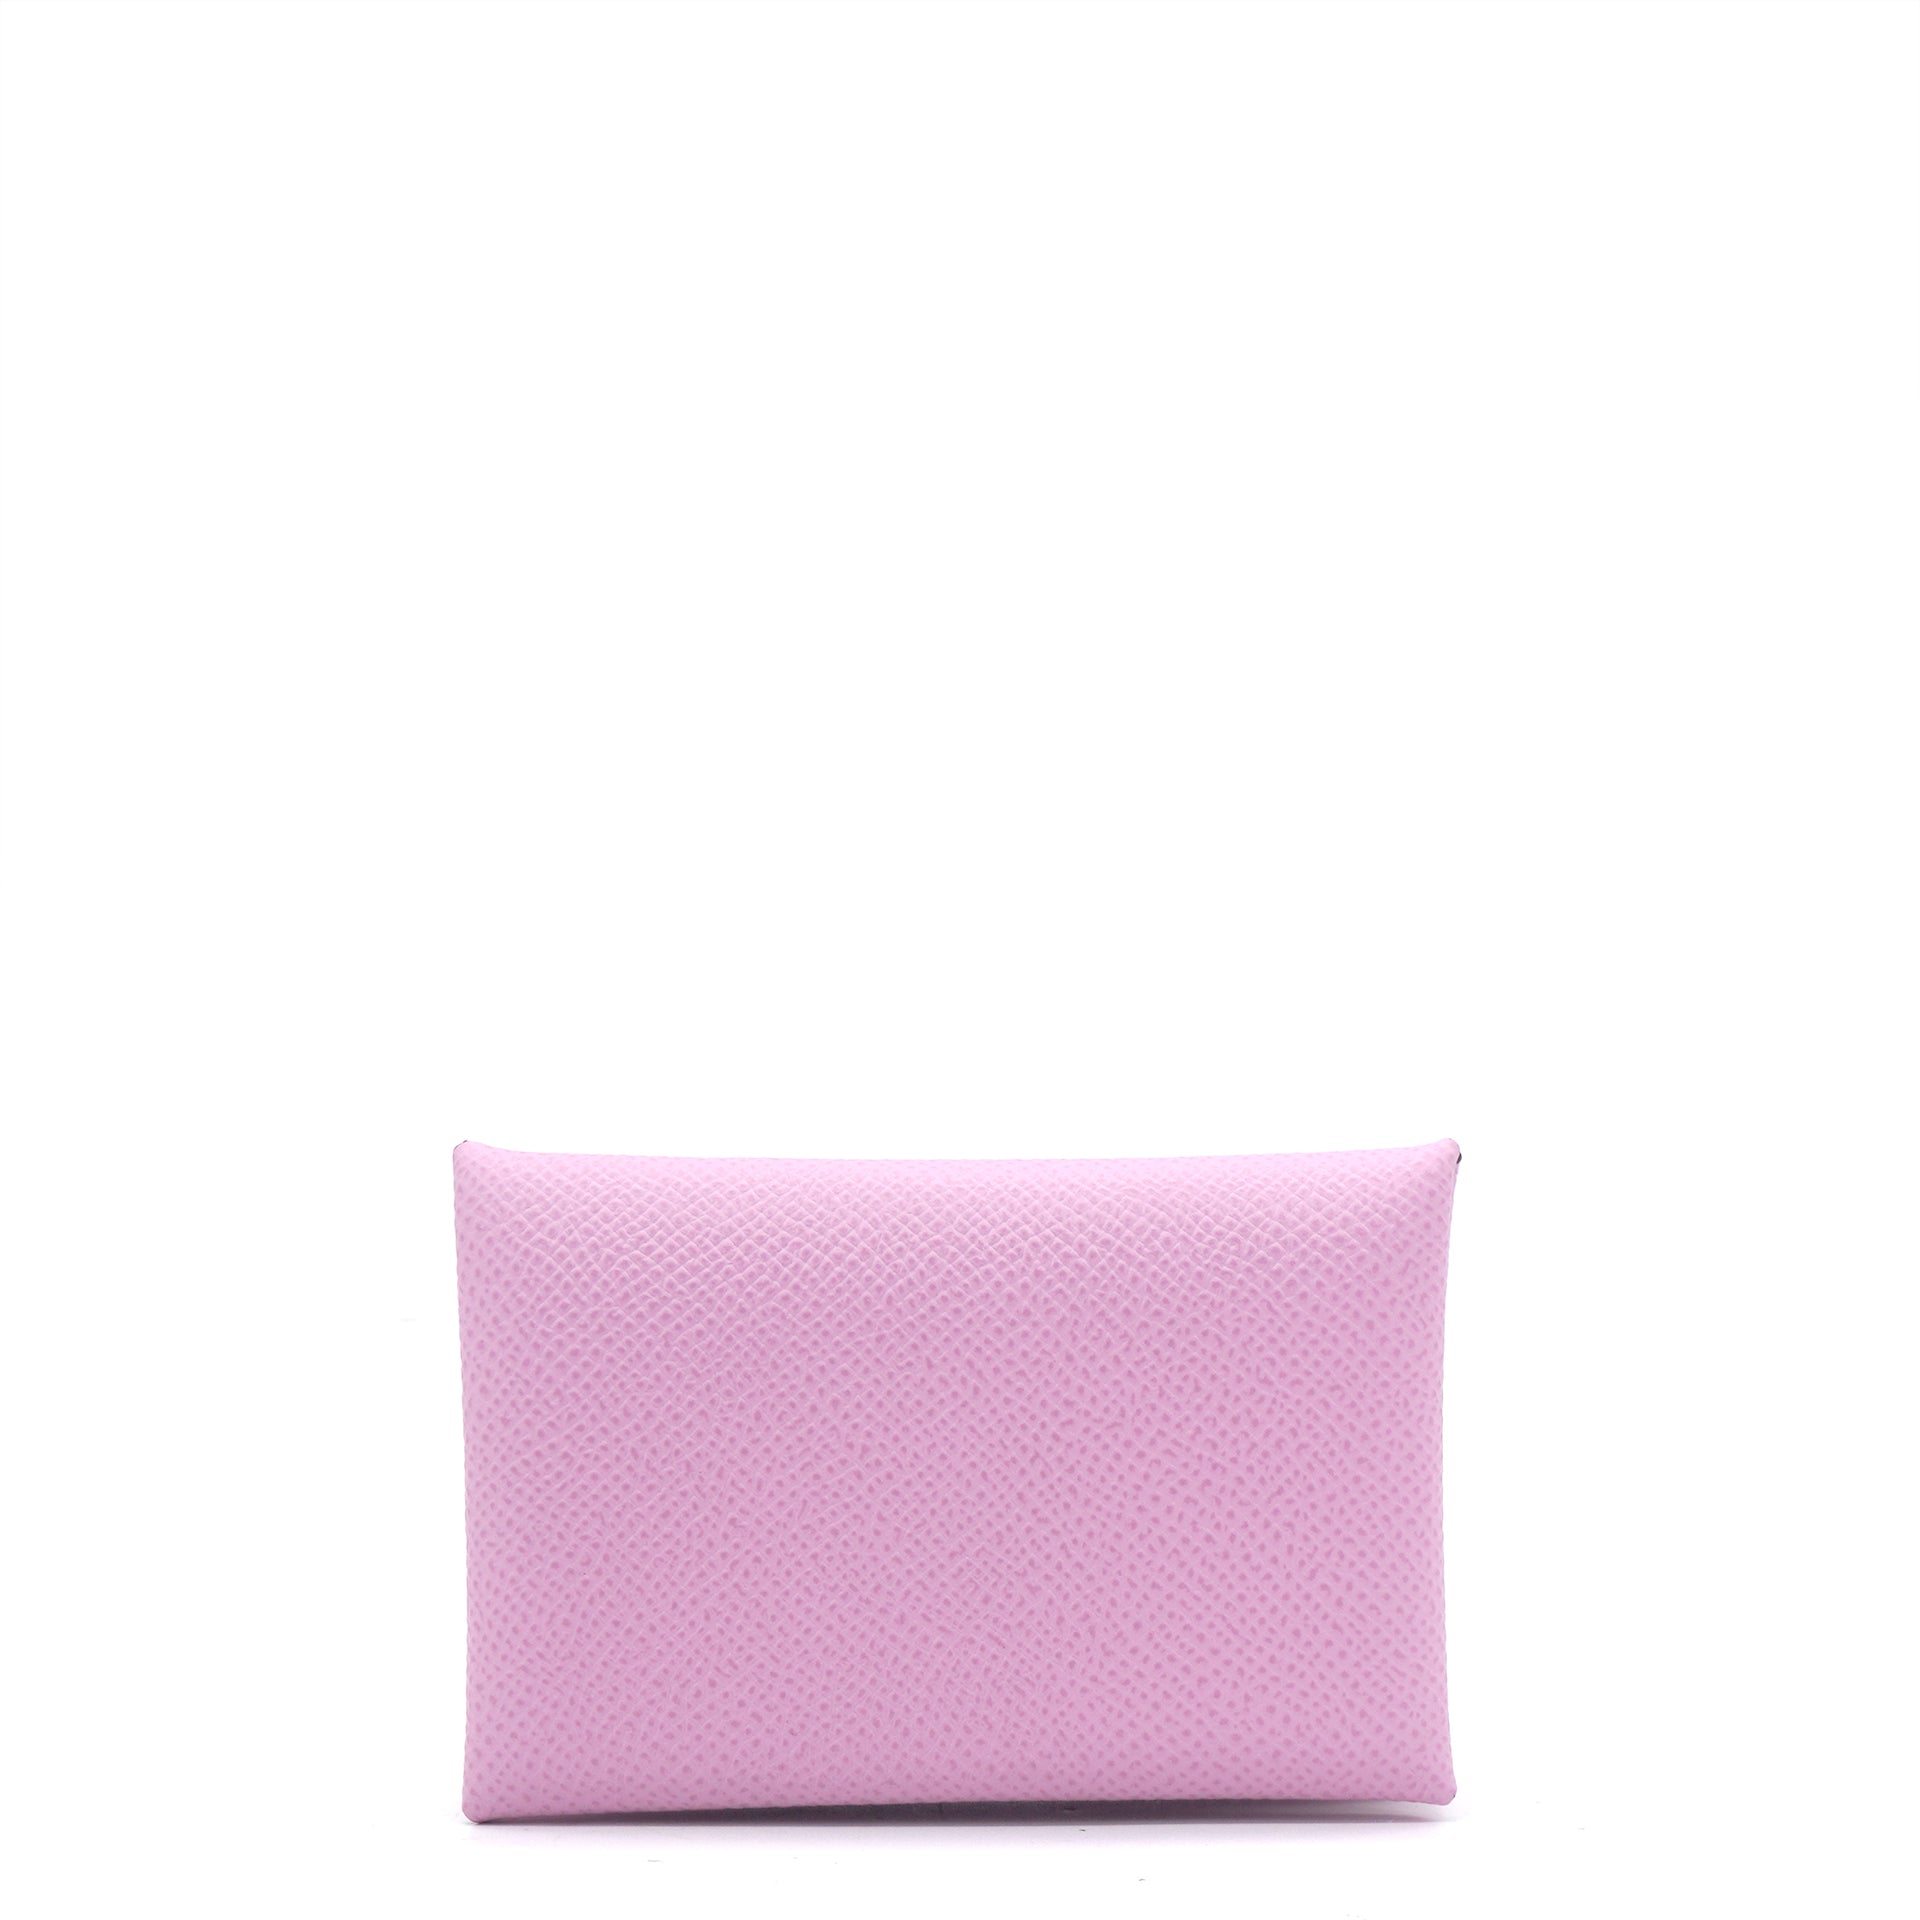 NEW Hermes Calvi Epsom ID credit card holder wallet in Mauve Sylvestre  (Pink)